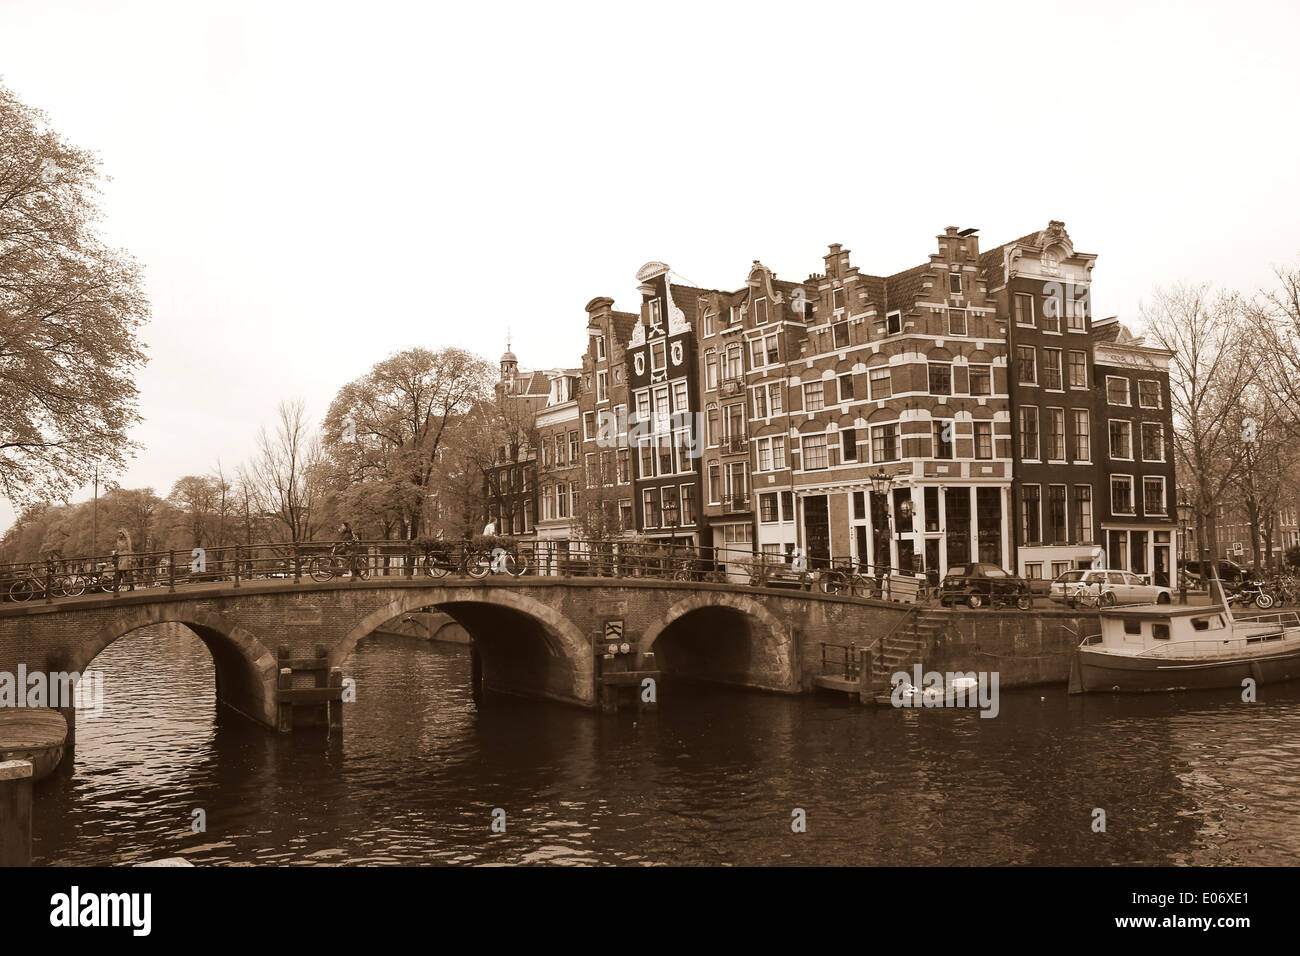 Brücke und alte Häuser, die Prinsengracht Bouwersgracht Kanal in Amsterdam trifft, Jordaan-Viertel, den Niederlanden (Sepia bearbeiten) Stockfoto